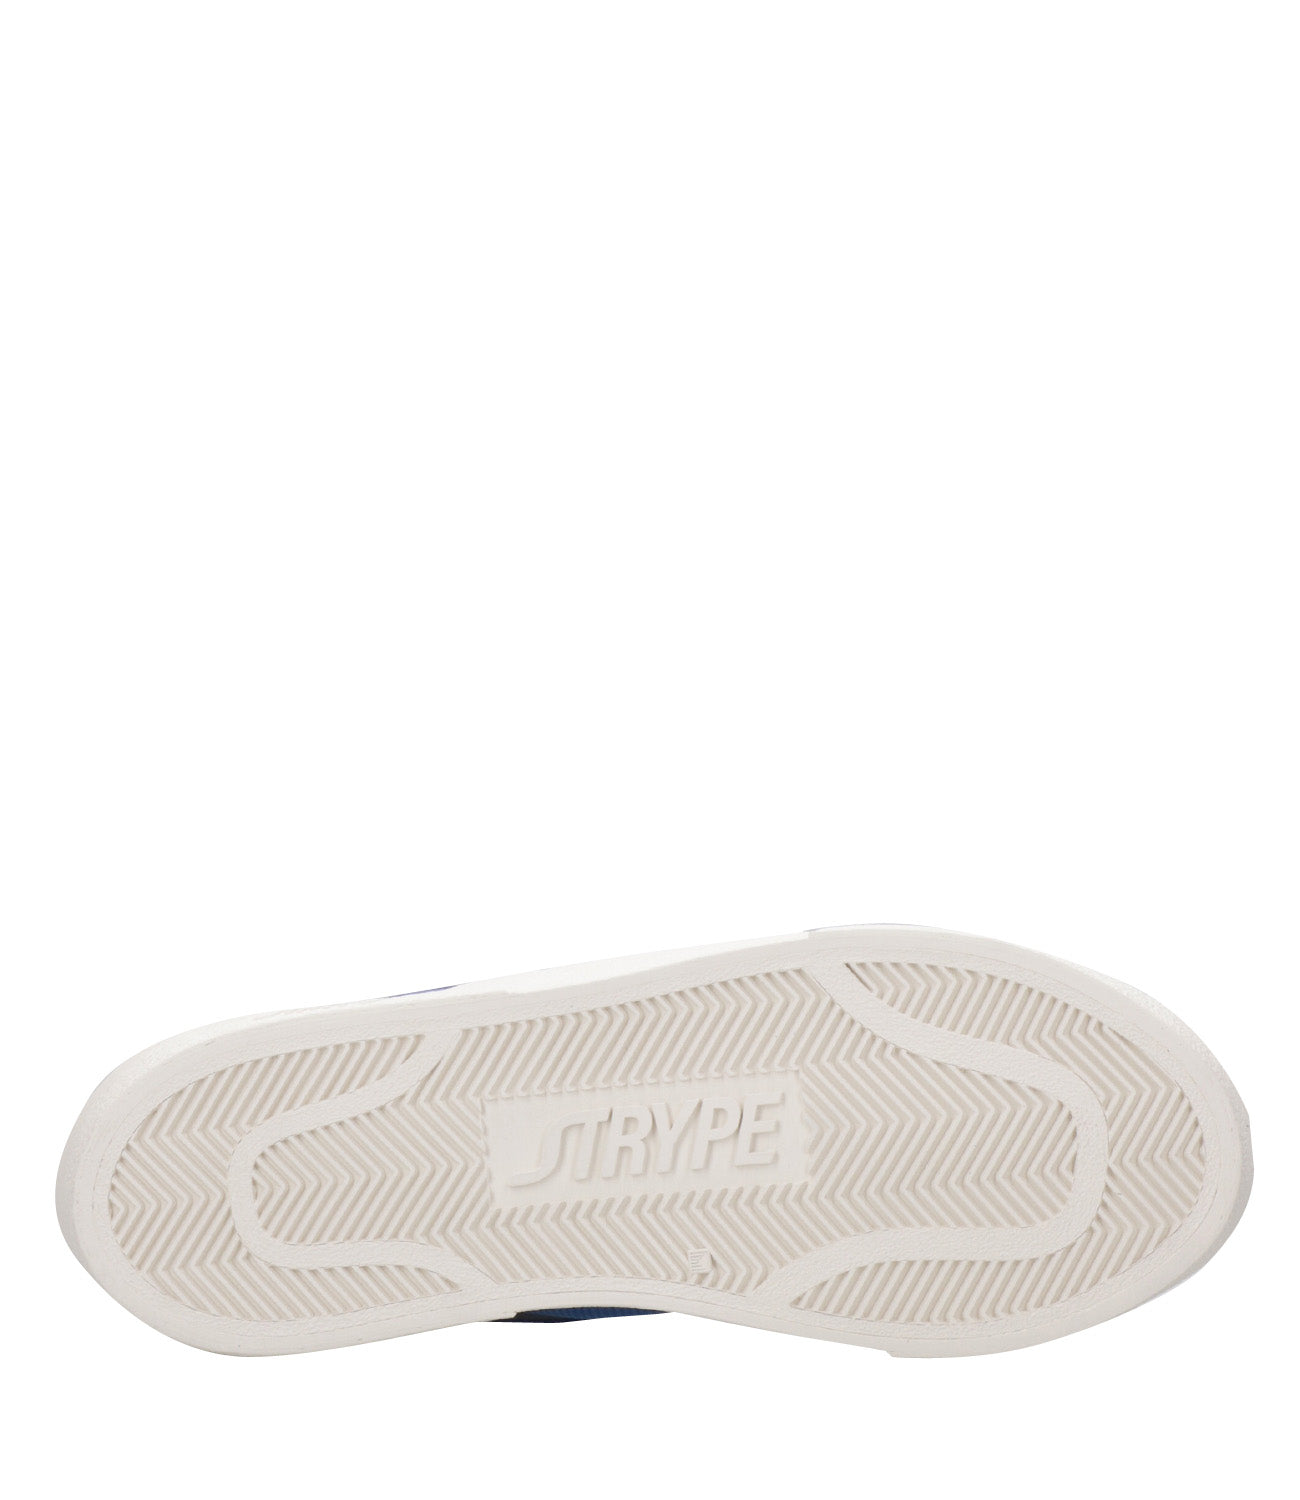 Strype | Sneakers Basket Low Blu Navy